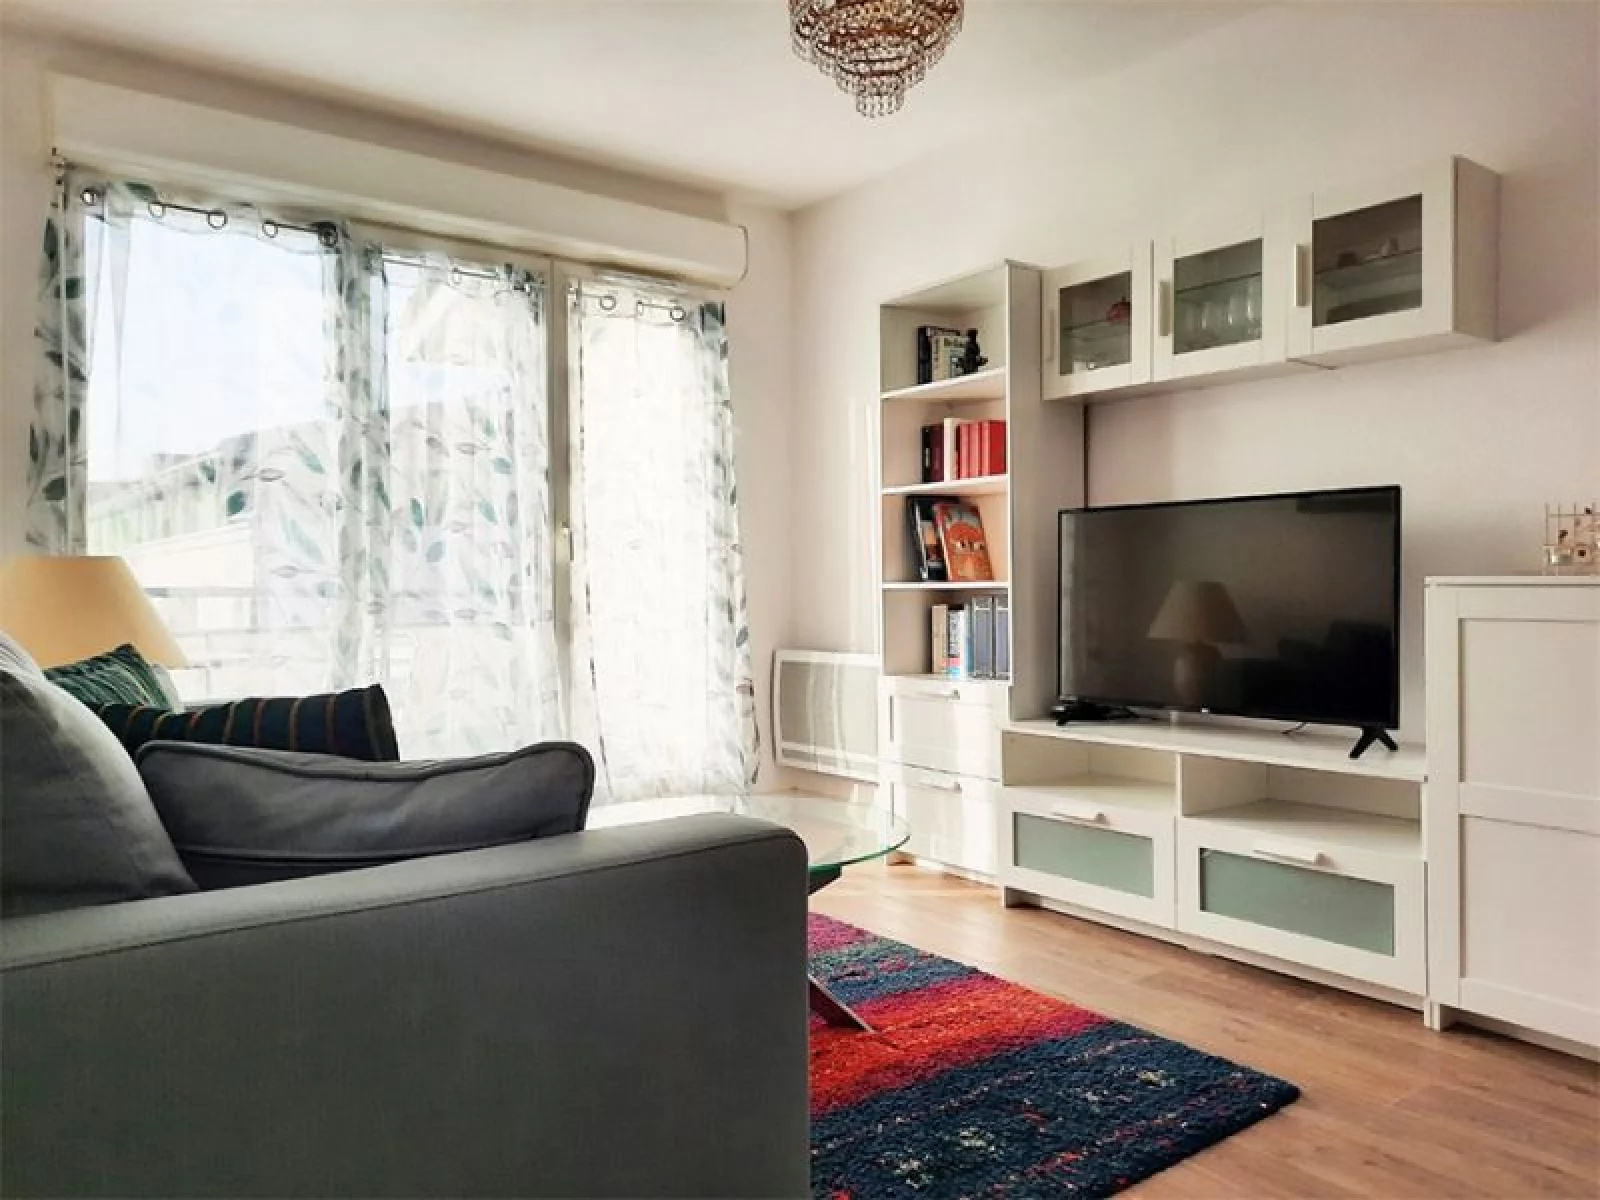 Location appartement meublé 2 pièces 36m² (Bordeaux - Caudéran)